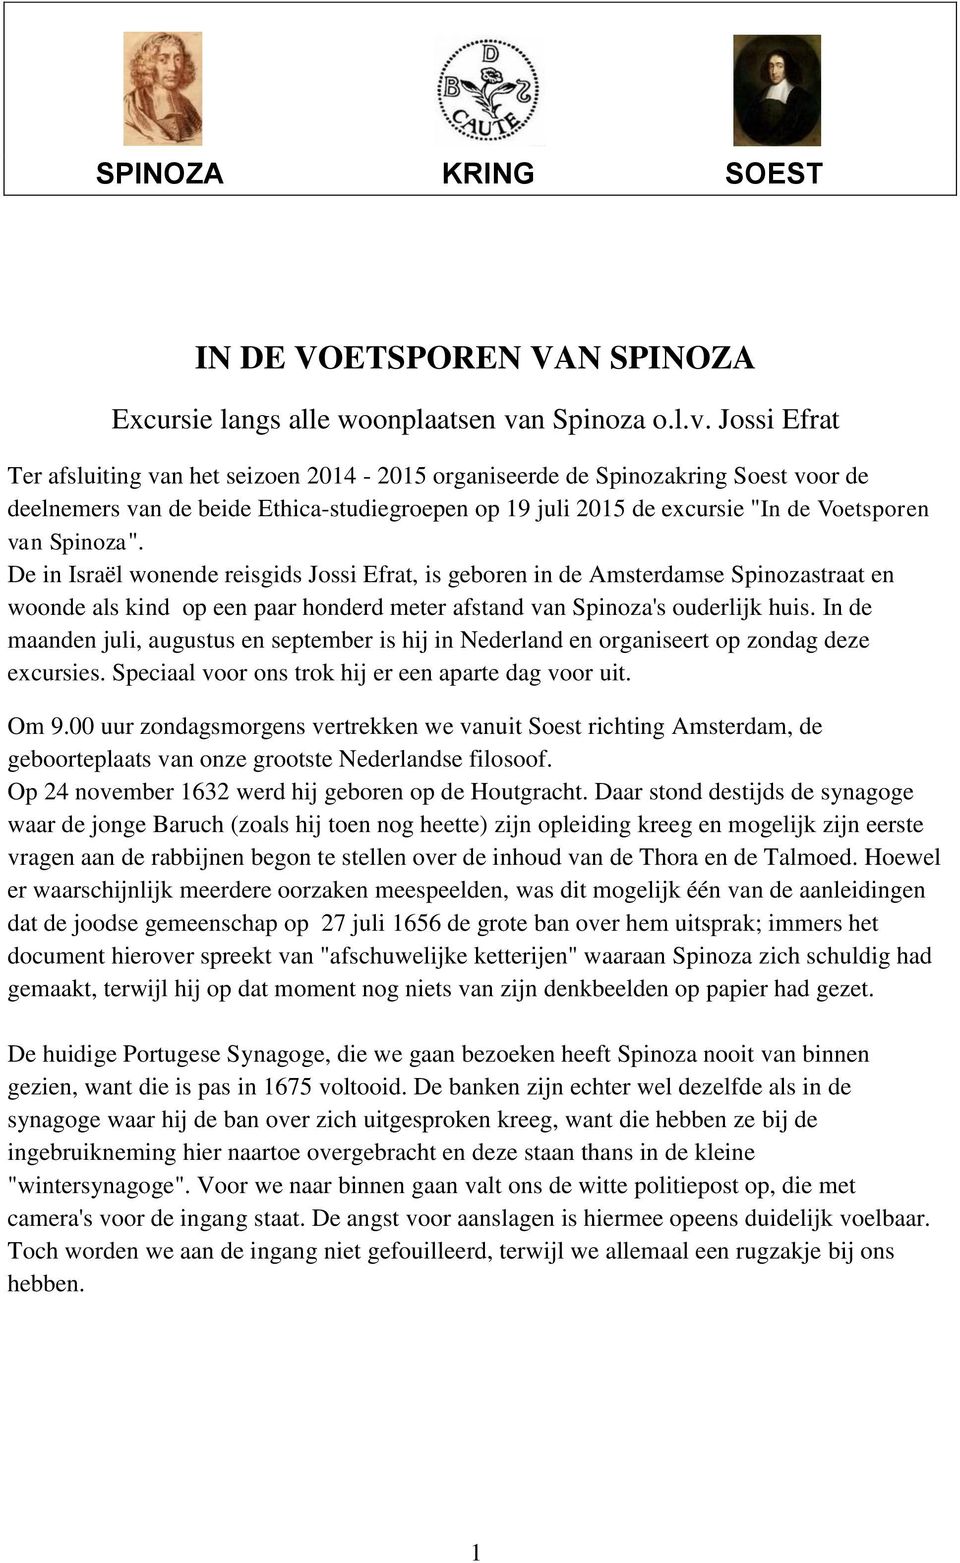 Jossi Efrat Ter afsluiting van het seizoen 2014-2015 organiseerde de Spinozakring Soest voor de deelnemers van de beide Ethica-studiegroepen op 19 juli 2015 de excursie "In de Voetsporen van Spinoza".